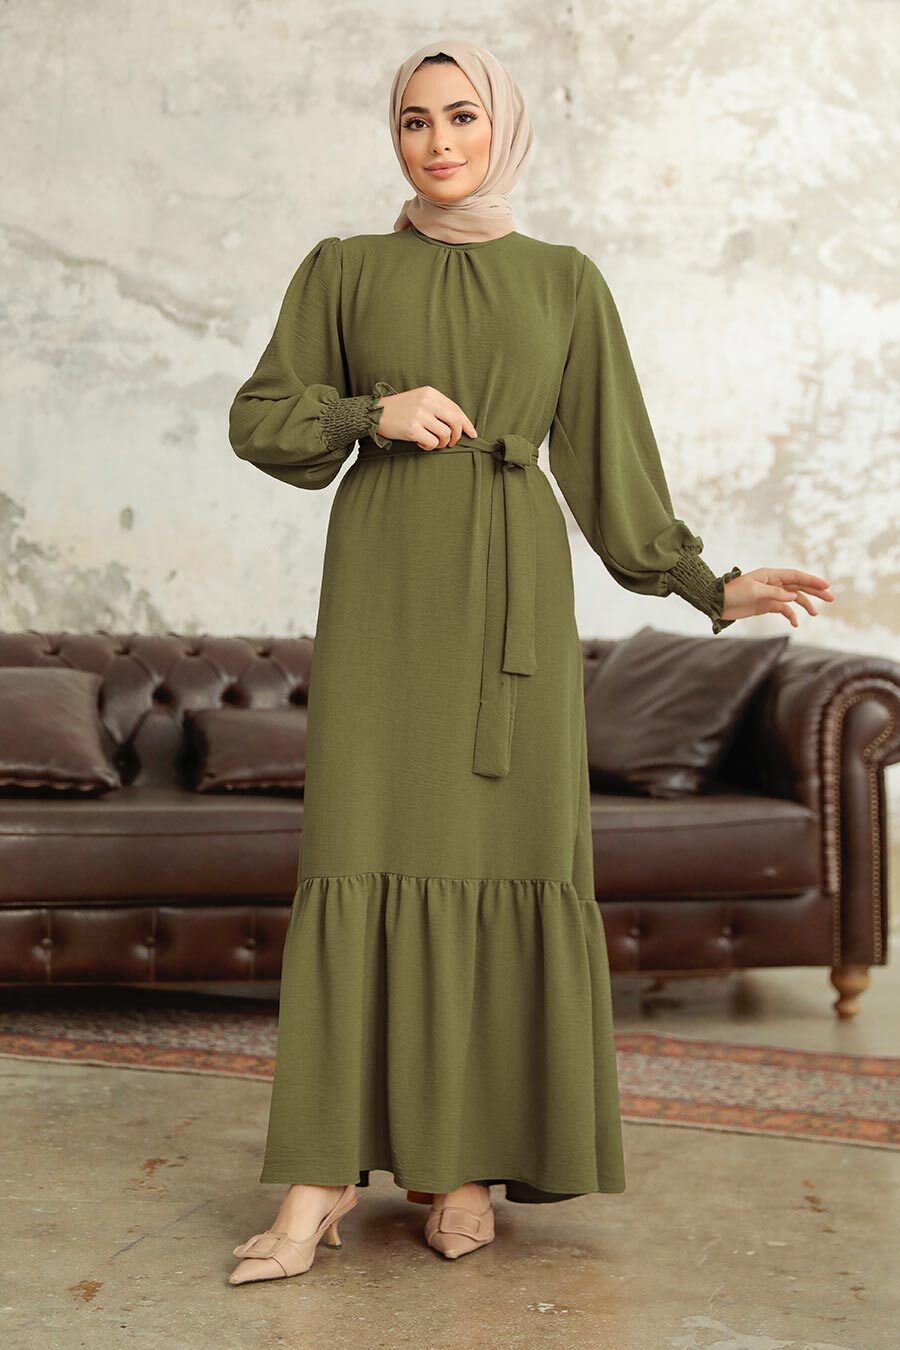 Neva Style - Etek Ucu Volanlı Haki Tesettür Elbise 5972HK